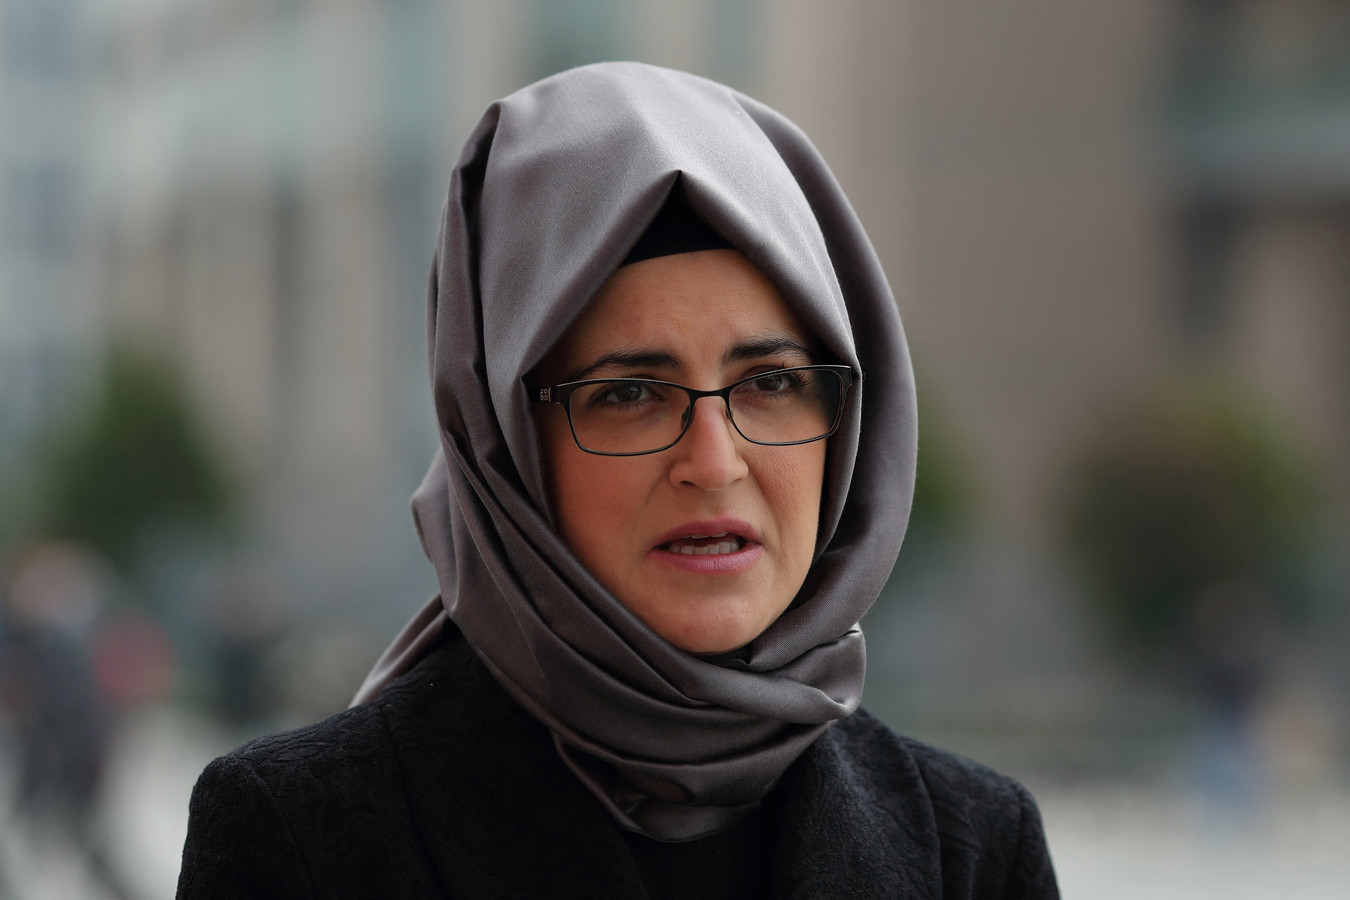 Hatice Cengiz, de verloofde van Khashoggi.